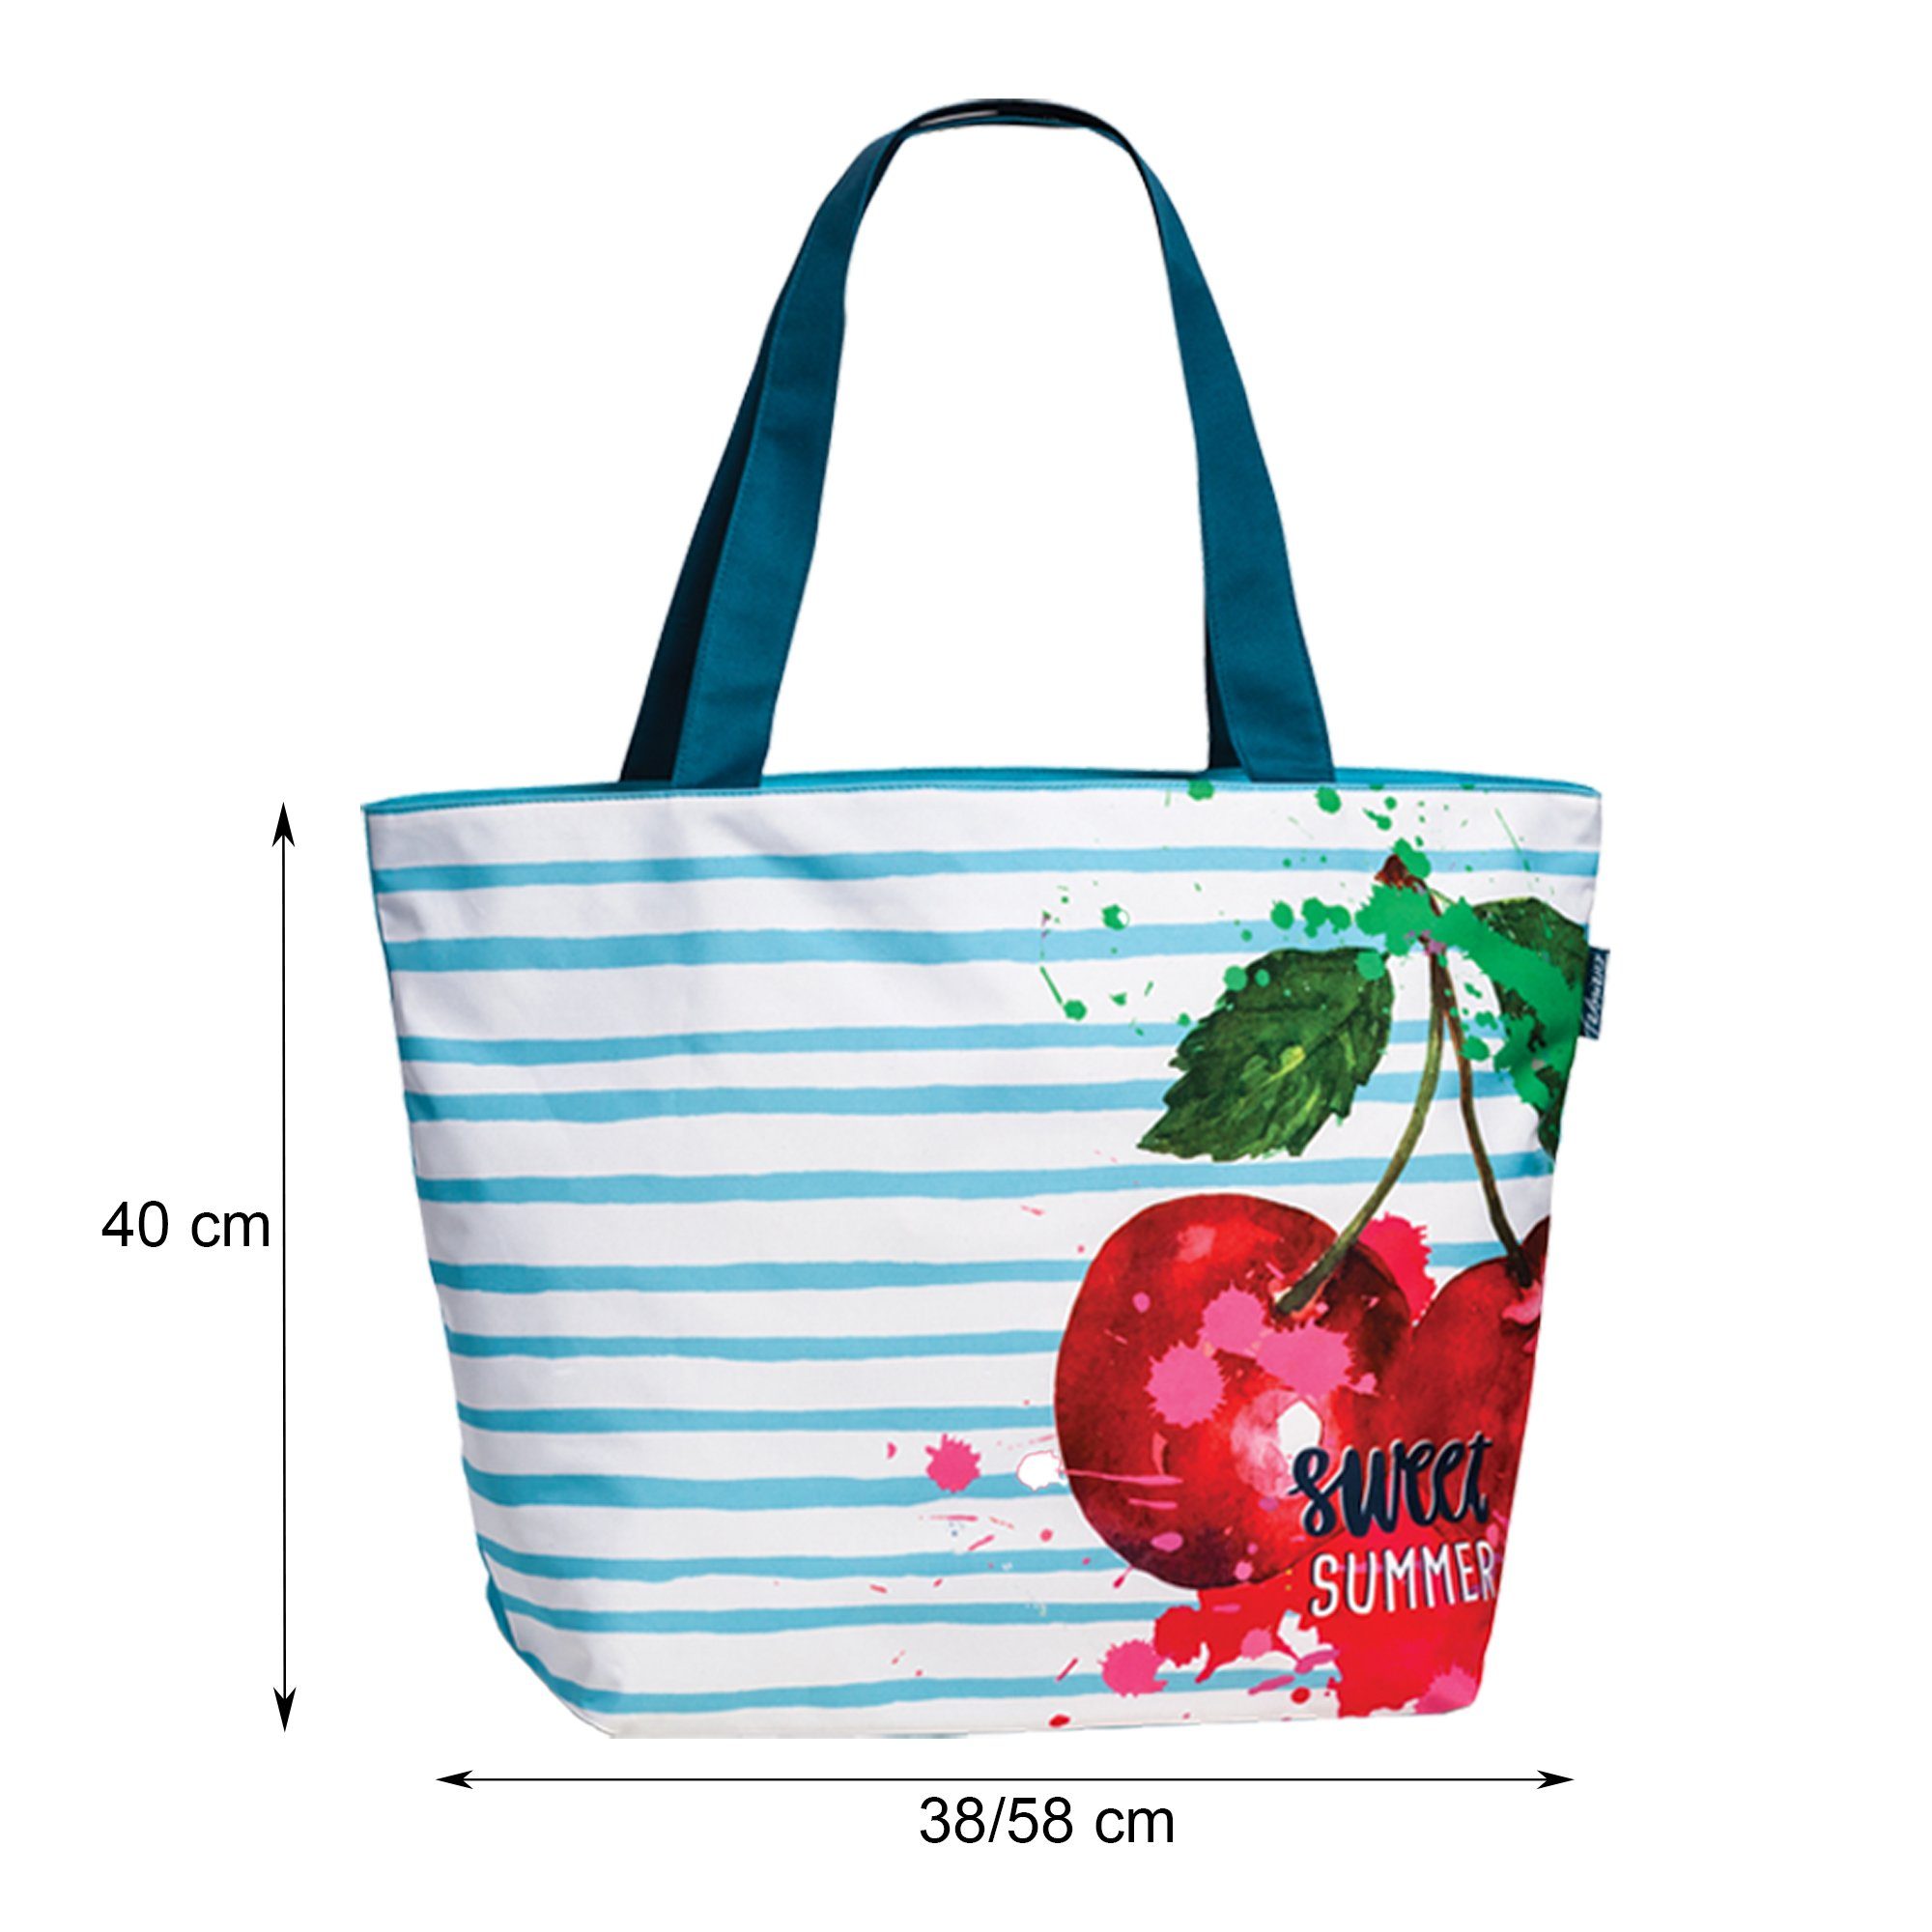 Shopper Einkaufsshopper Haus Beach Blau Schultertasche und Badetasche Deko Reißverschluss Strandtasche